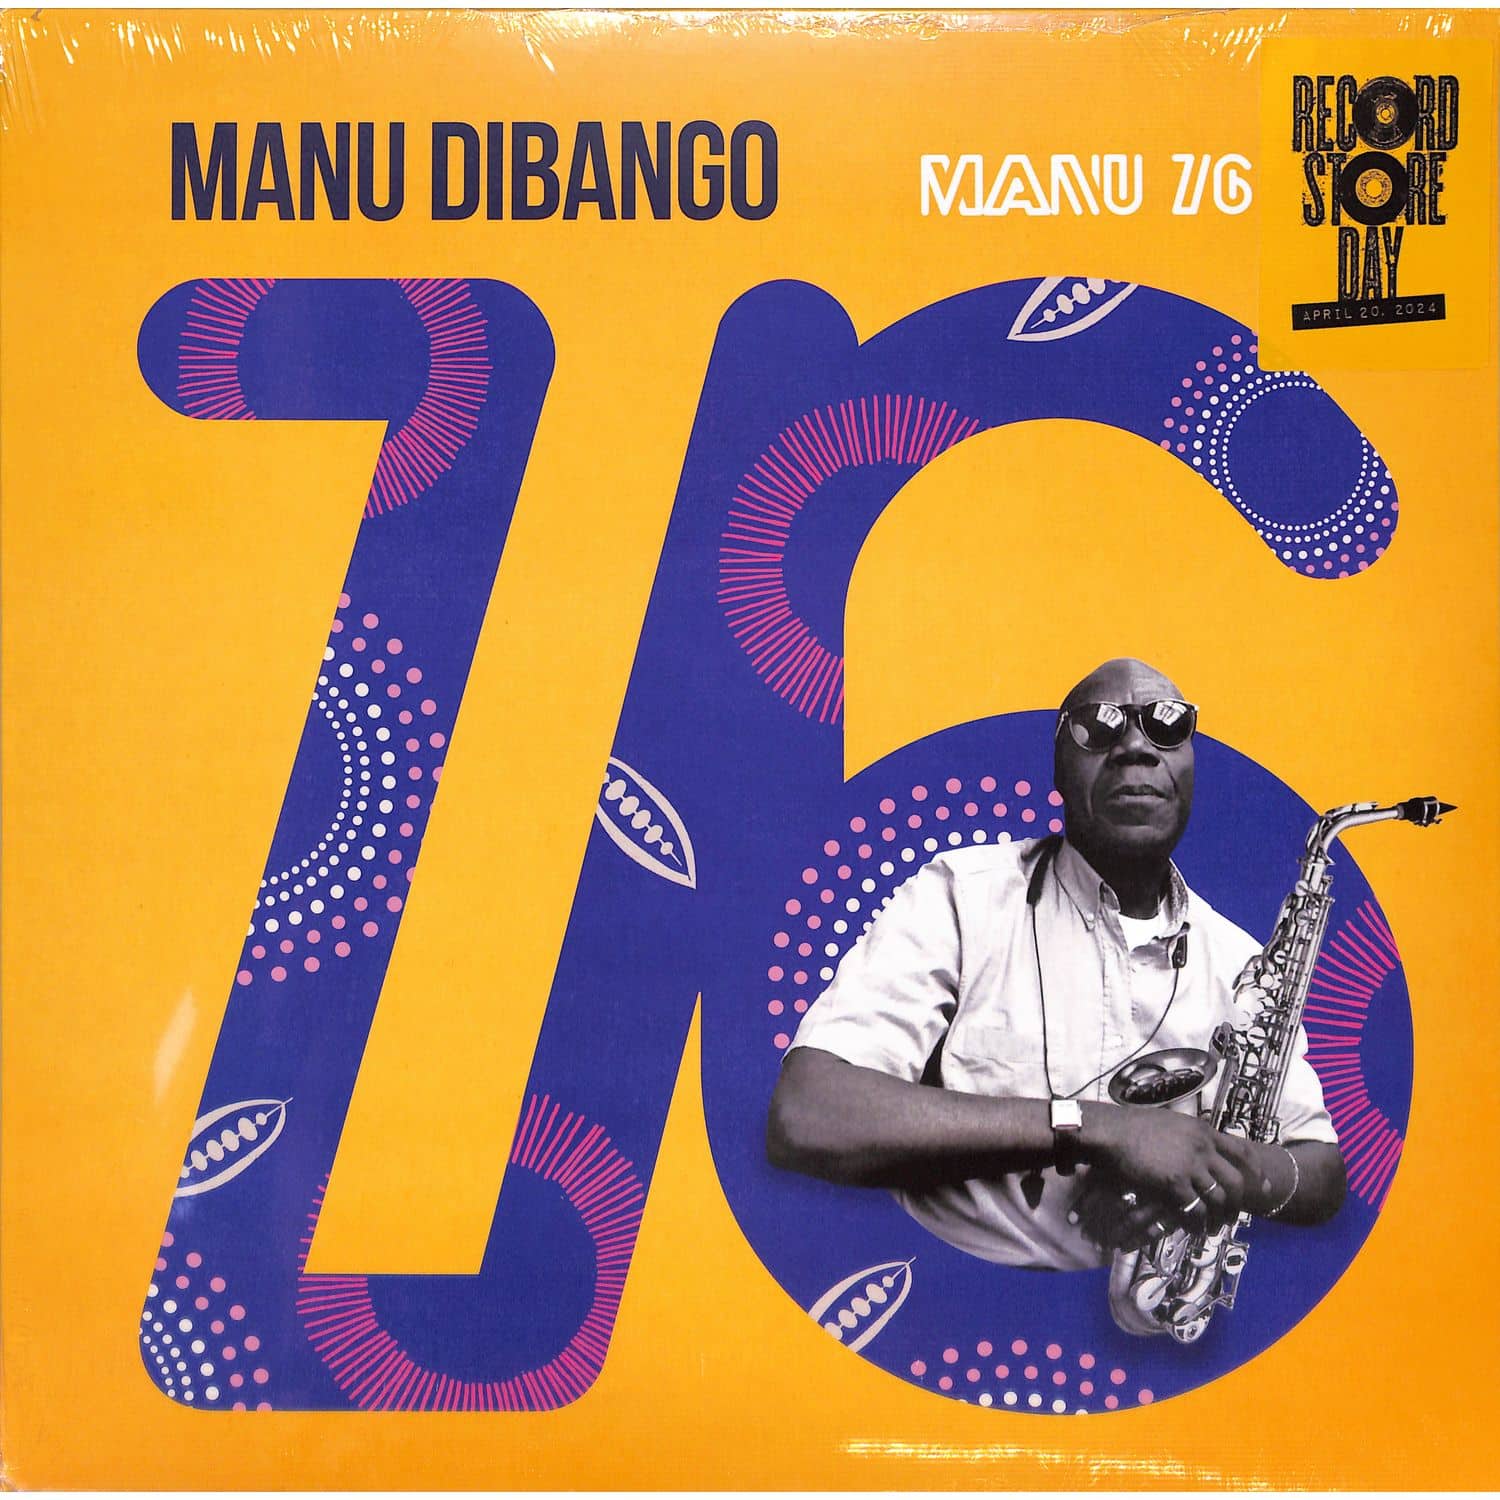 Manu Dibango - MANU 76 